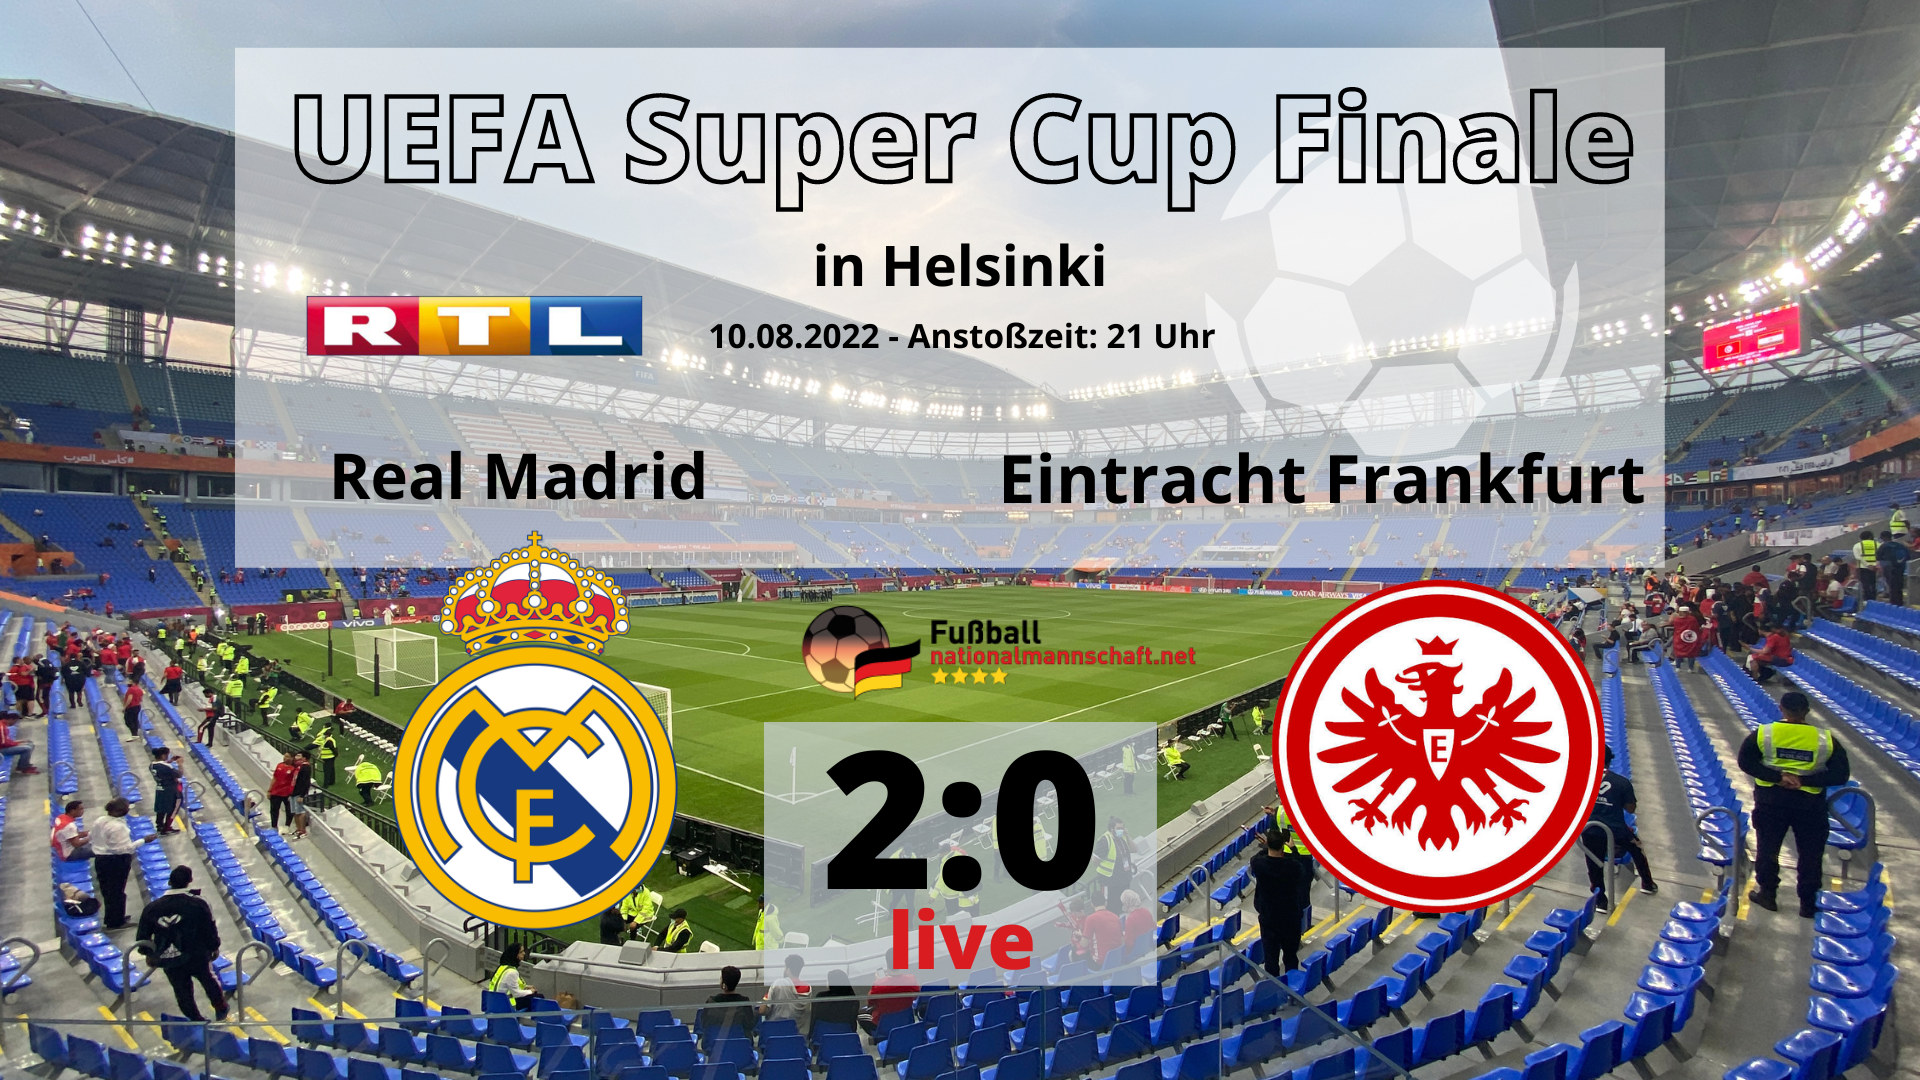 Fußball heute RTL live * 2:0 UEFA Super Cup Finale Real Madrid - Eintracht Frankfurt *** Wer spielt heute?